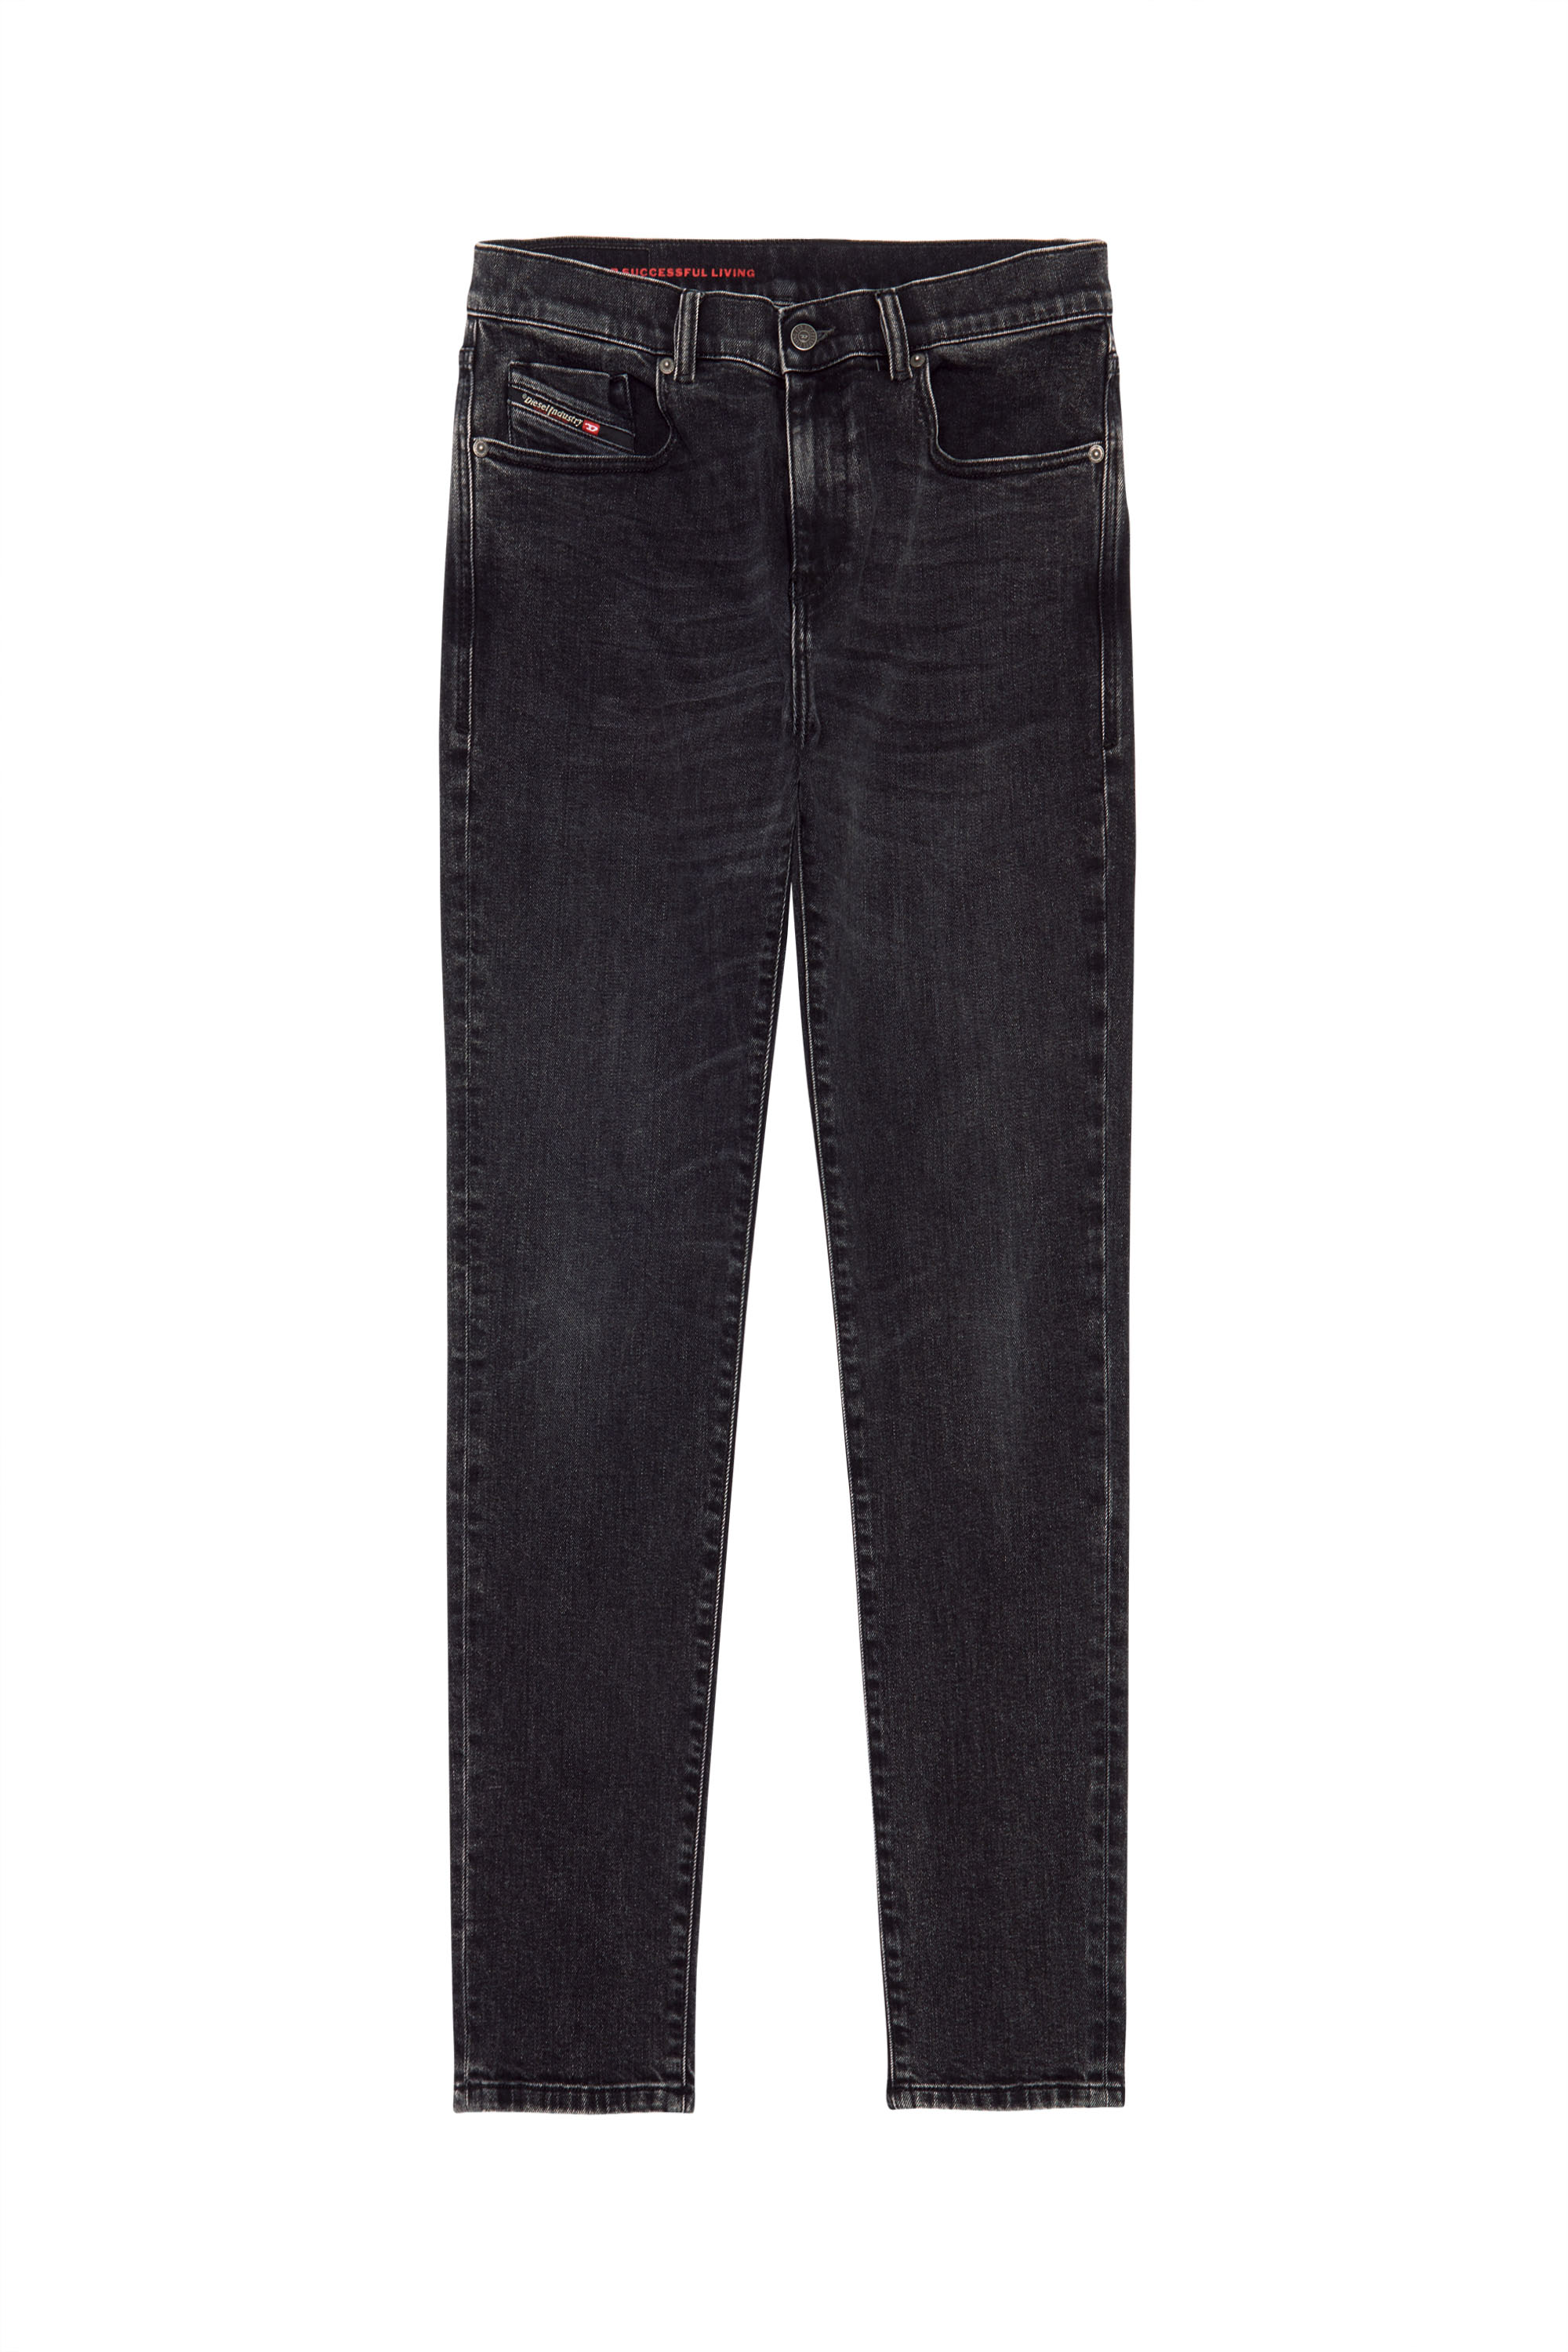 Slim Jeans 2019 D-Strukt 09B83, Black/Dark grey - Jeans